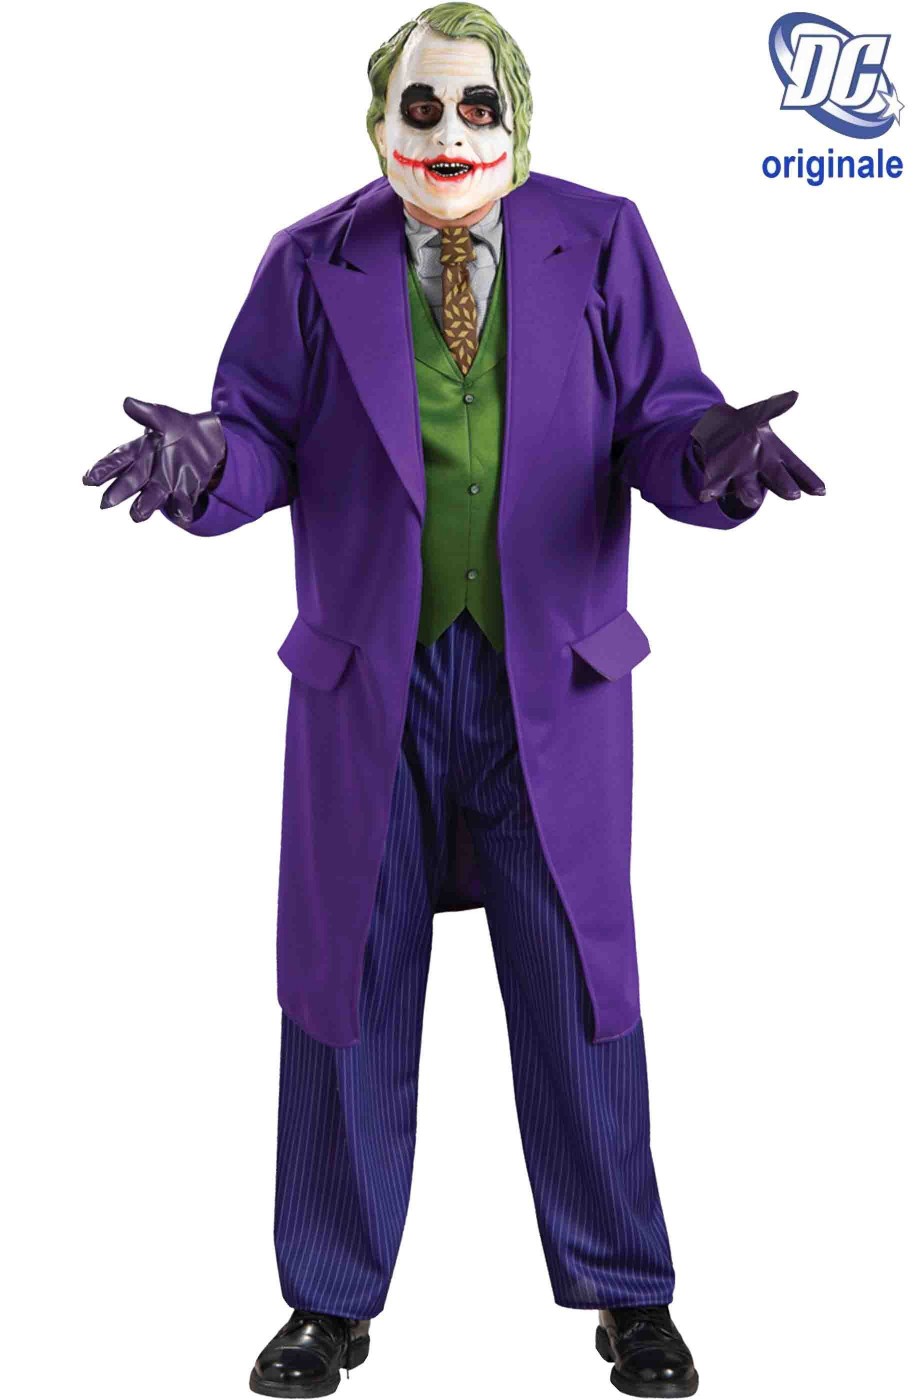 Costume Joker De Luxe Film Batman